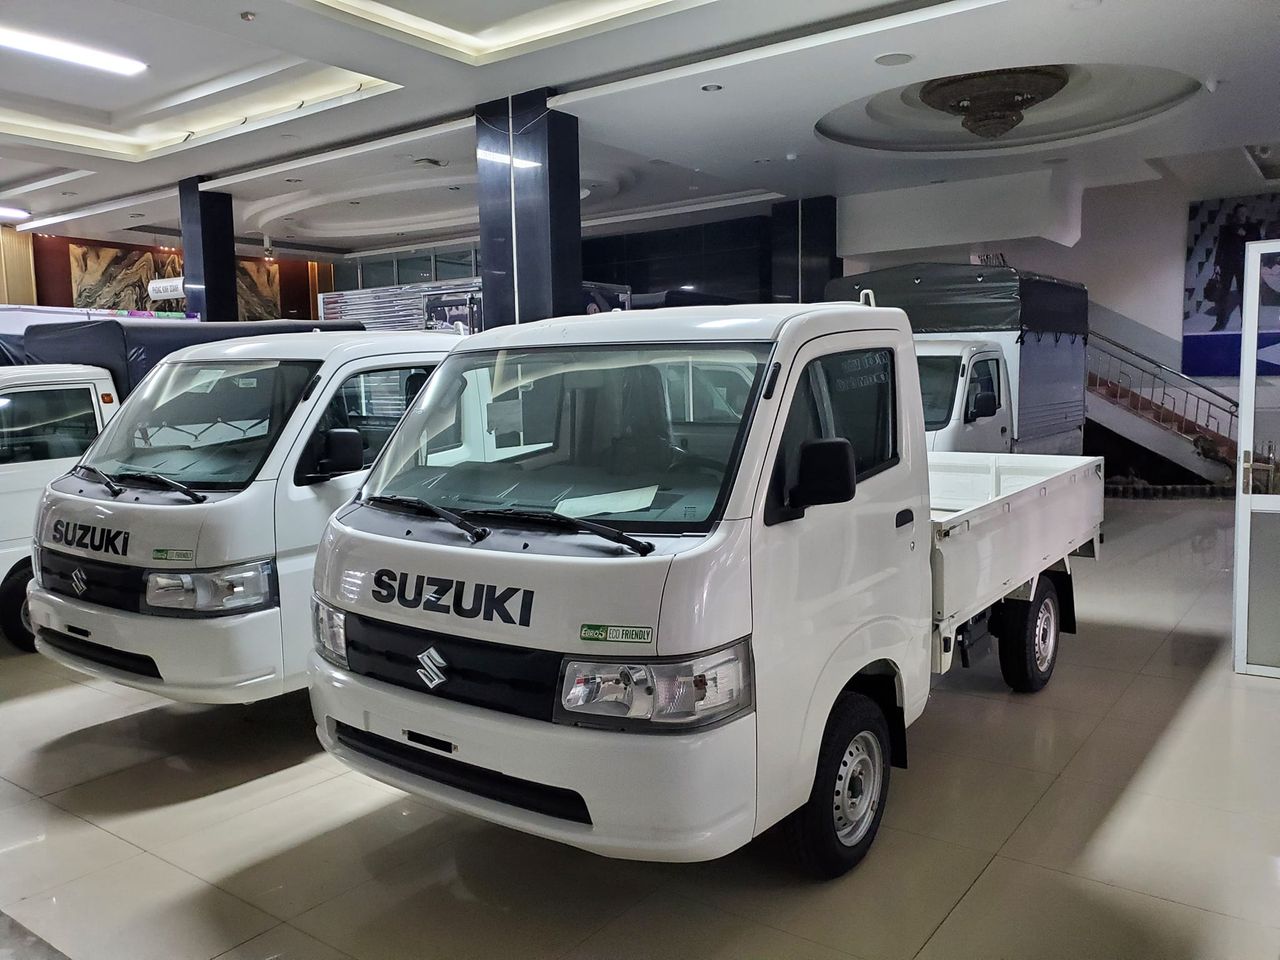 TƯ VẤN : Thay lốp xe tải Suzuki Carry Pro ở Biên Hoà, Đồng Nai.